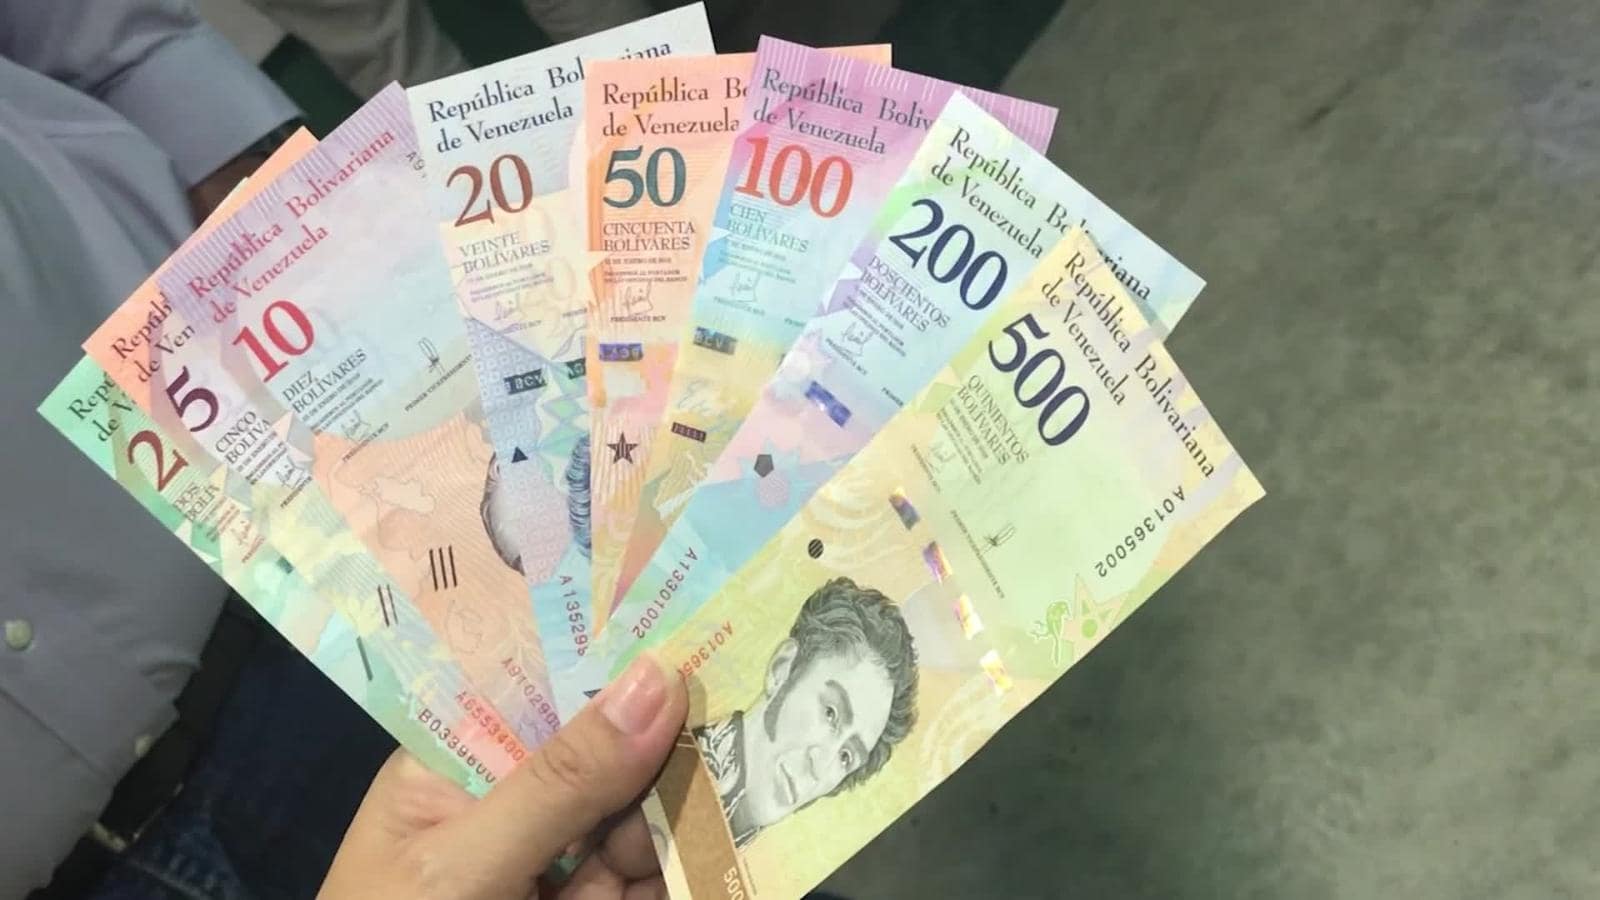 Venezuela le quita seis ceros a su moneda, lo que simplifica las cuentas, pero no alivia la larga crisis económica del país.